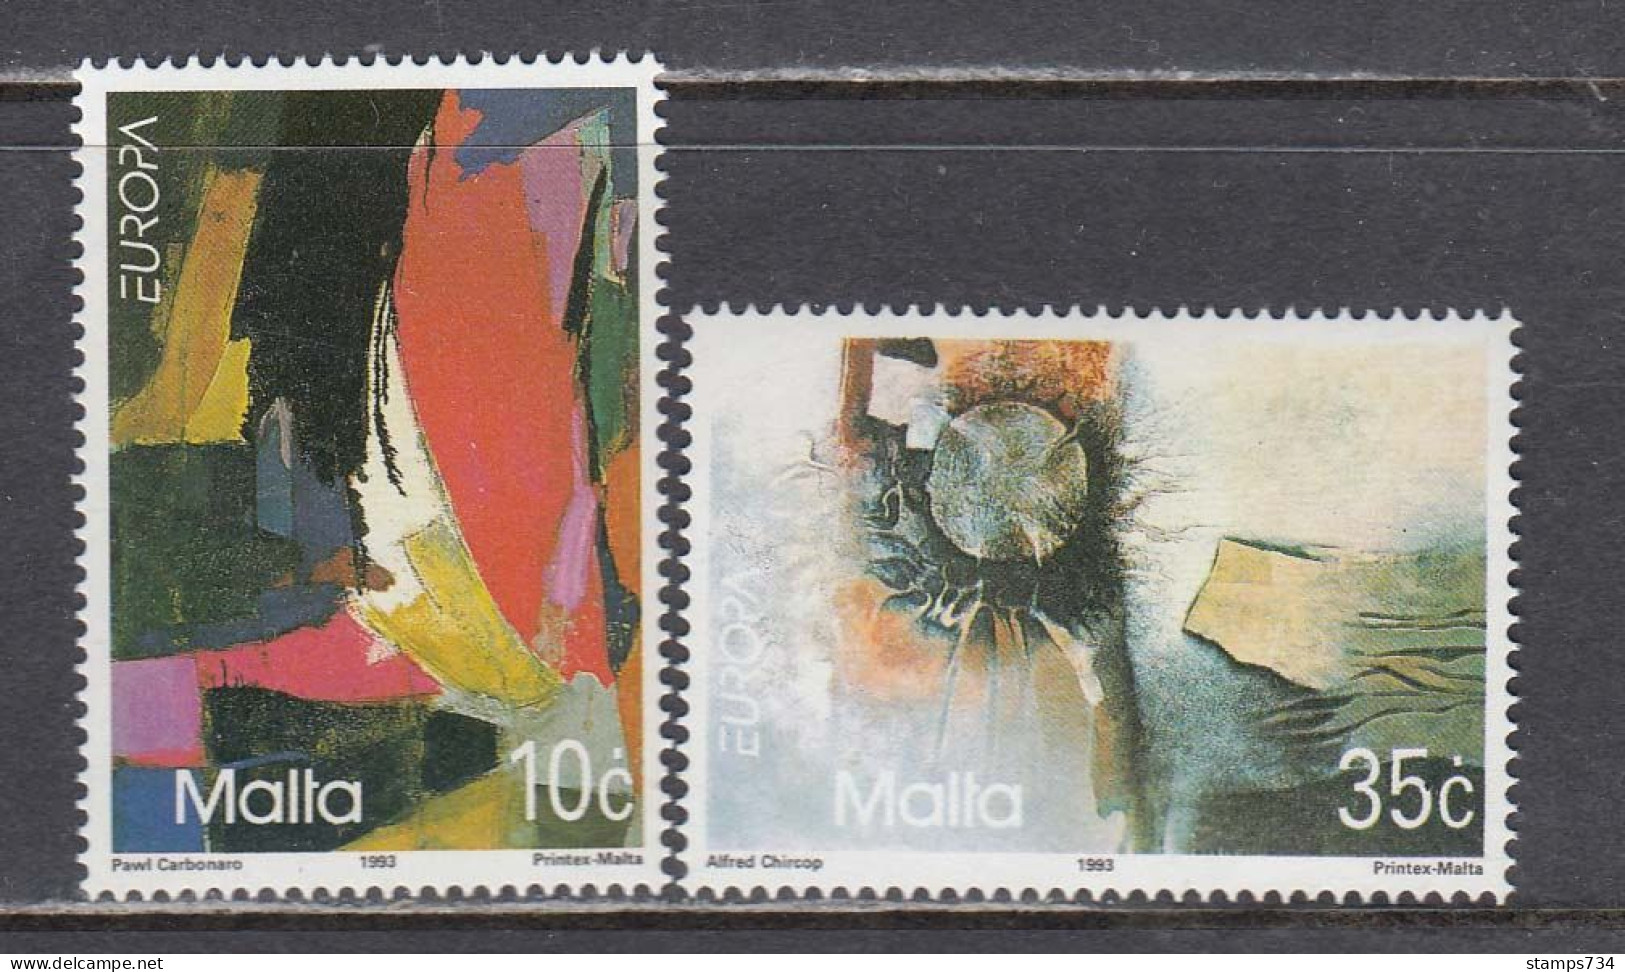 Malta 1993 - EUROPA, Mi-Nr. 904/05, MNH** - Malte